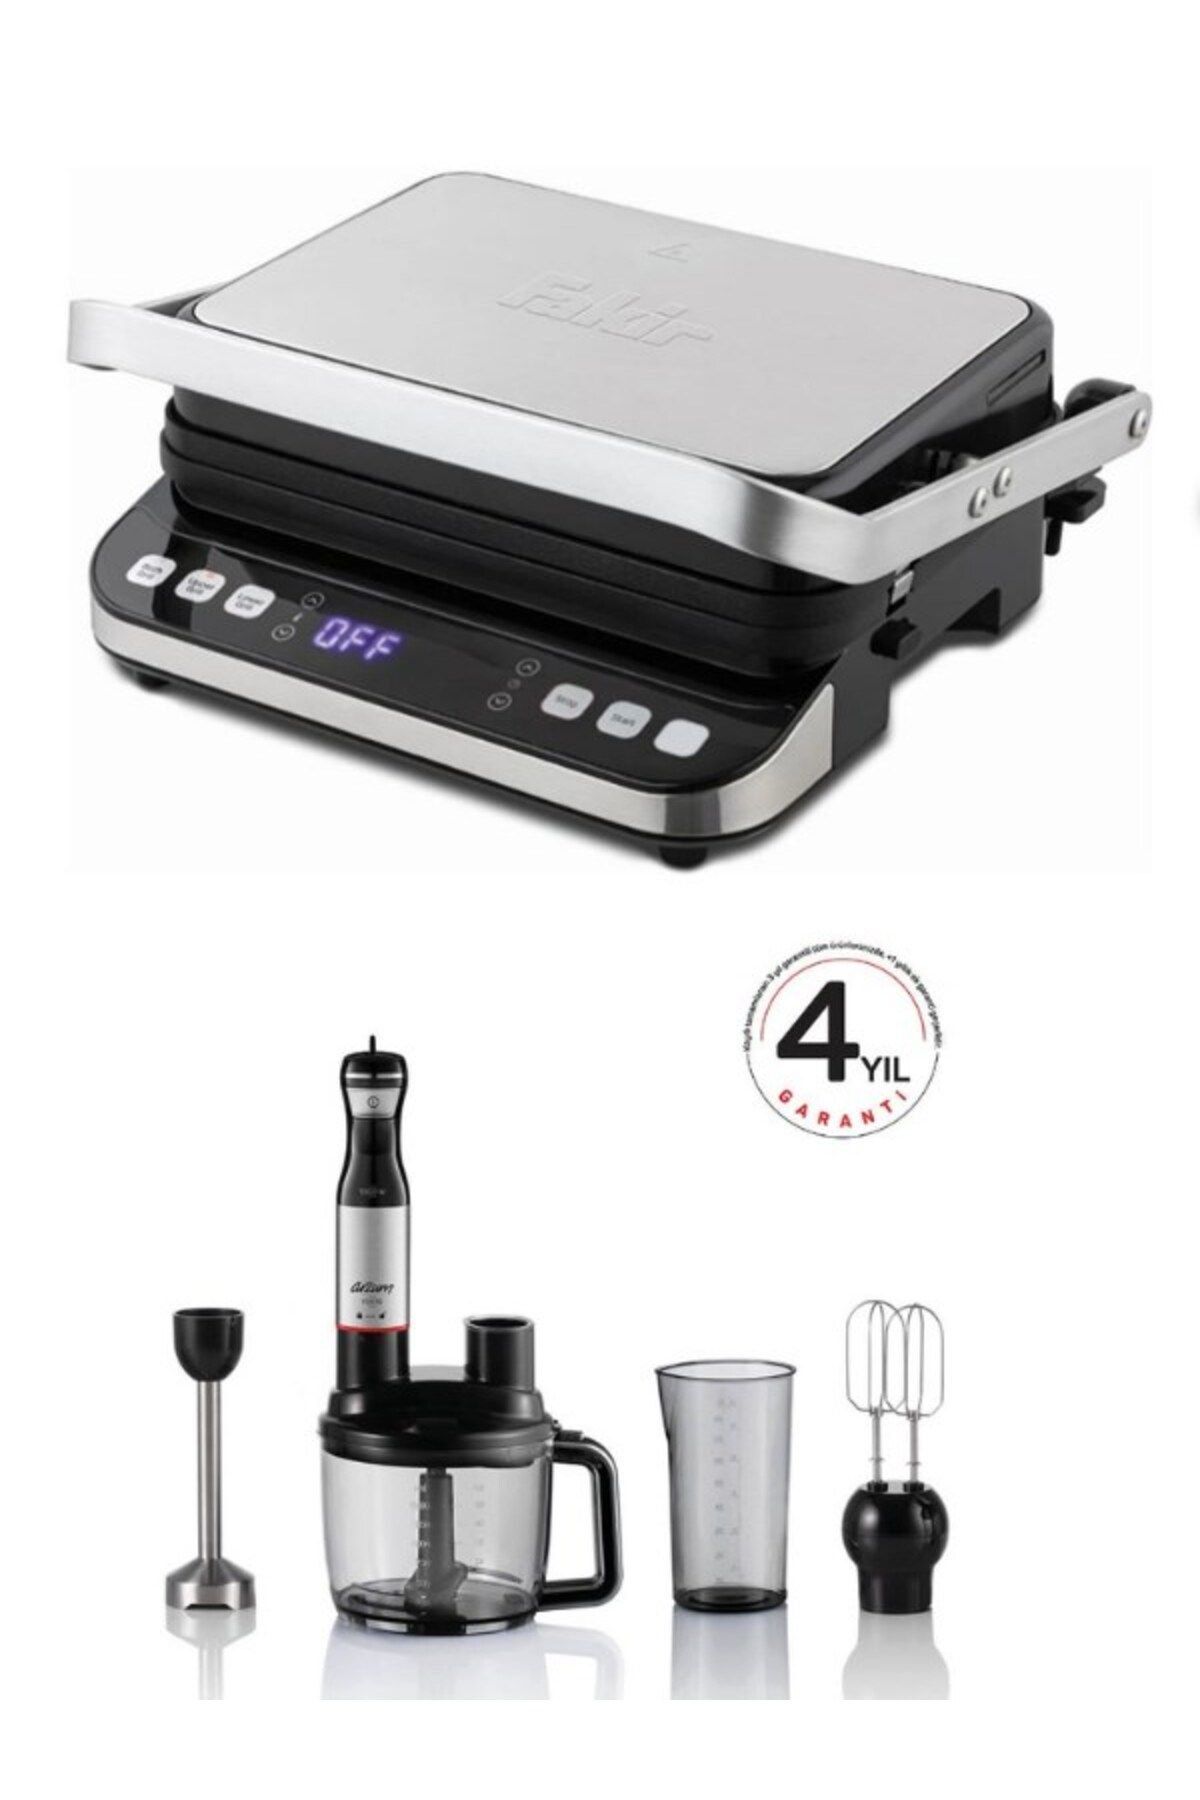 Fakir Grill Expert Elite 2000 W Izgara ve Tost Makinesi - Arzum AR1157-S Blender Avantajlı Çeyiz Set